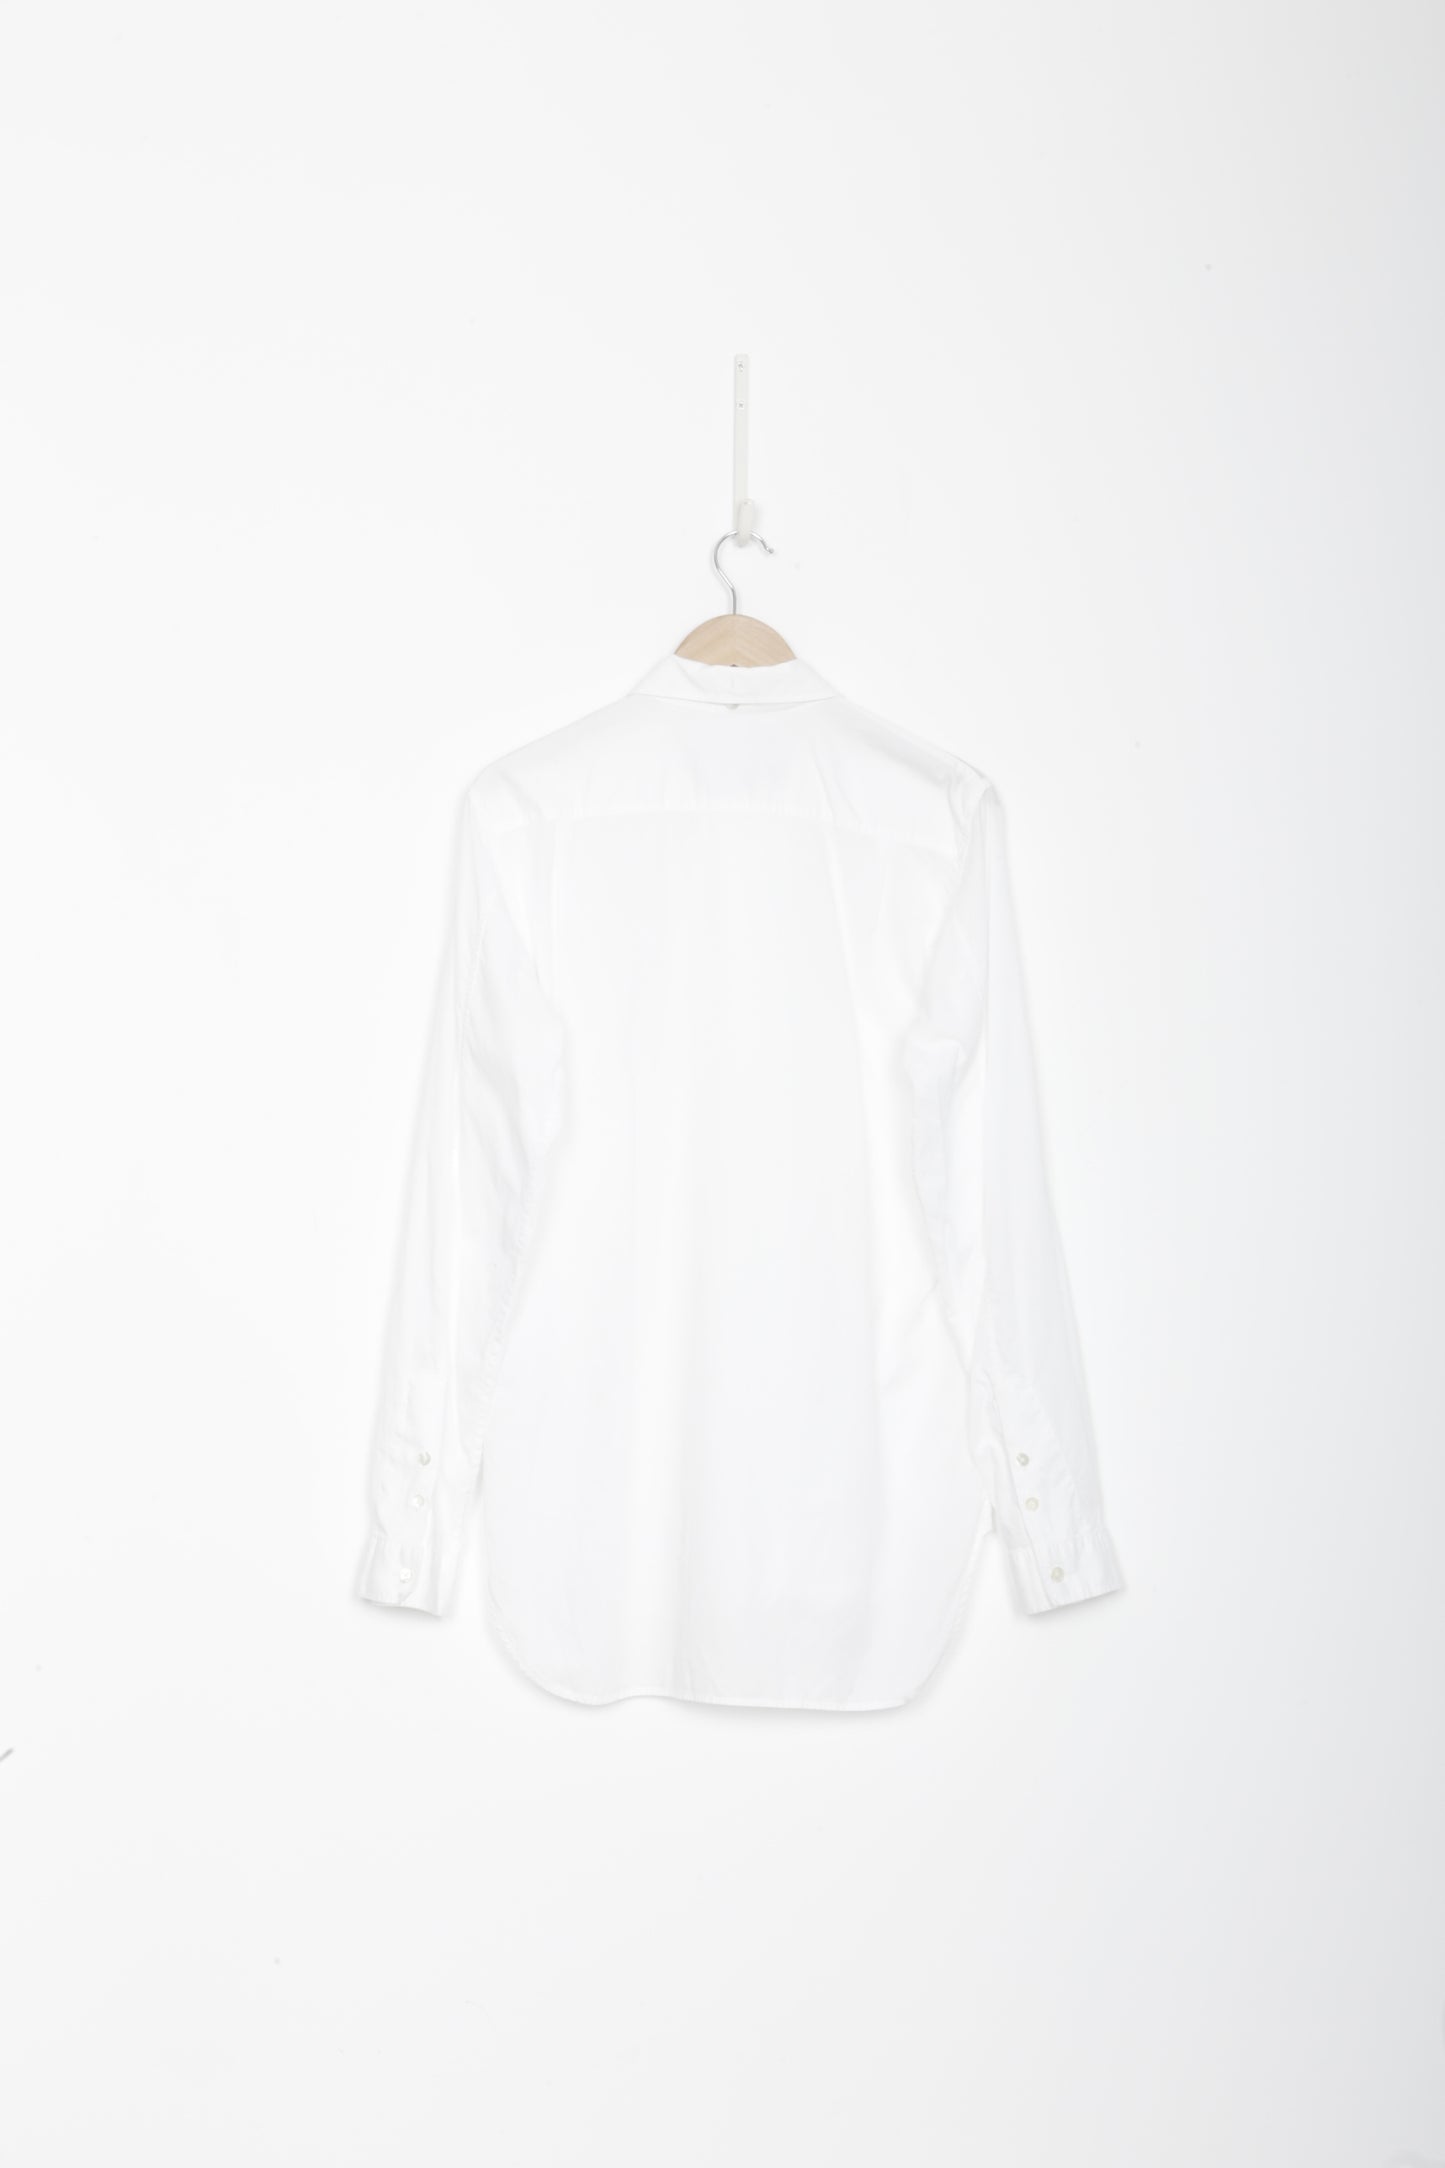 Ann Demeulemeester Mens White Shirt Size M